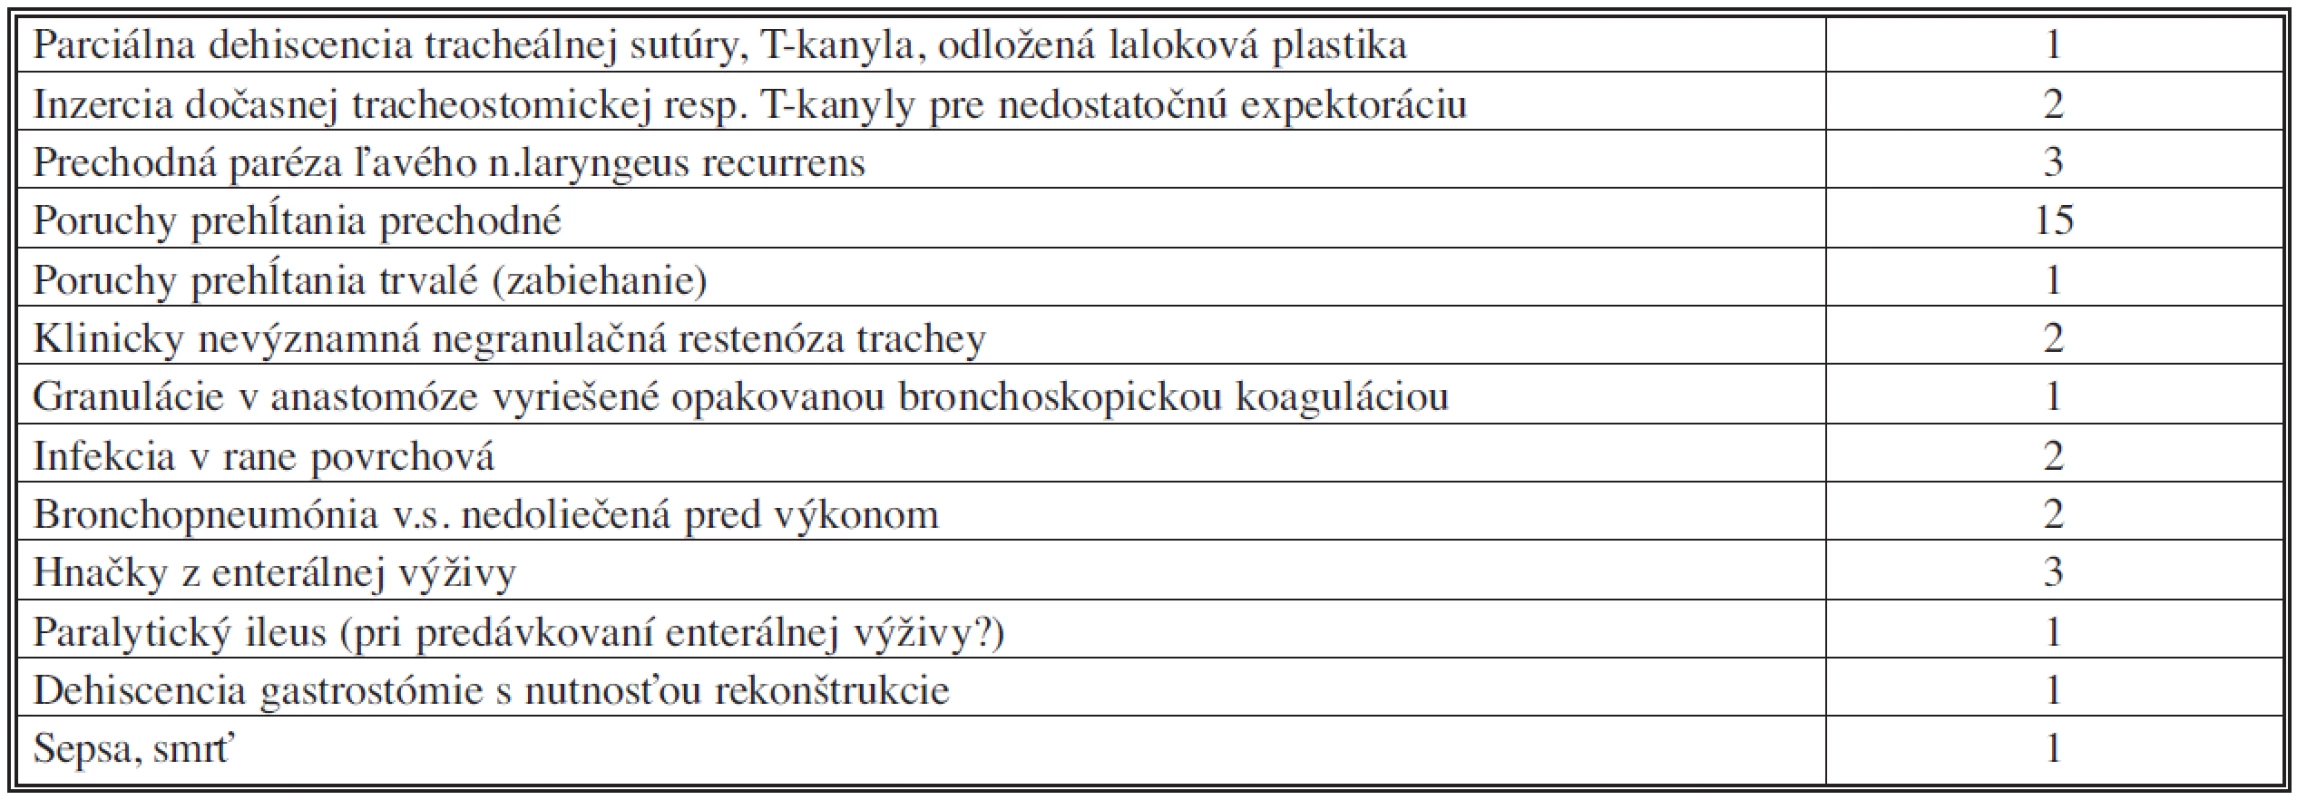 Komplikácie liečby tracheoezofageálnych fistúl v našom súbore
Tab. 3. Tracheoesophageal fistula treatment complications in the subject group